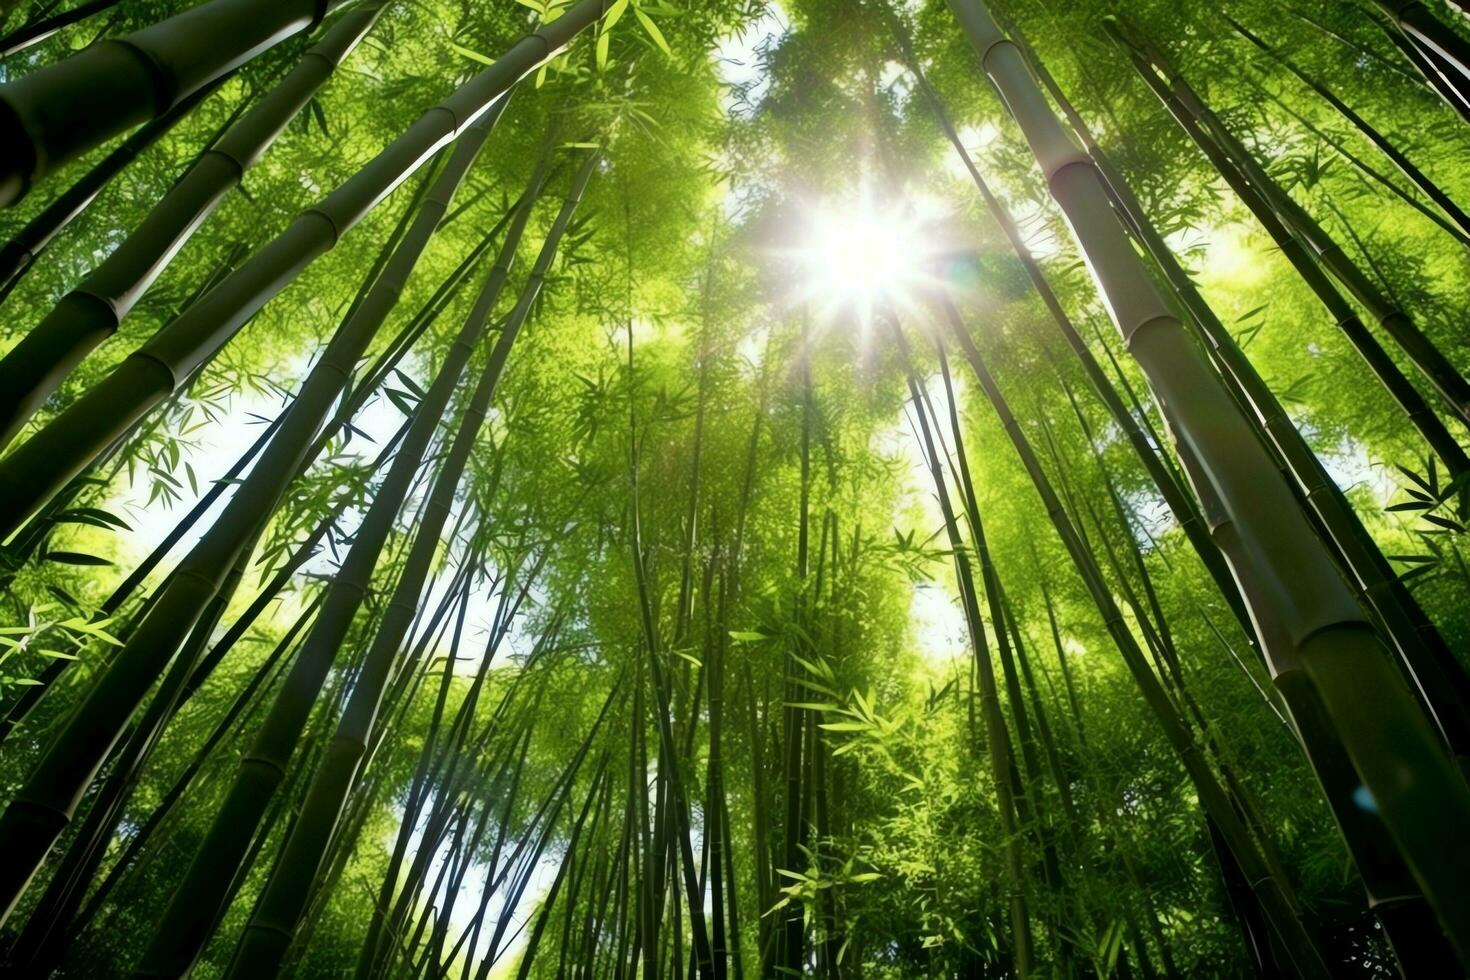 visie van botanisch groen bamboe tropisch Woud in daglicht. oosters bamboe bosje in China Japans concept door ai gegenereerd foto